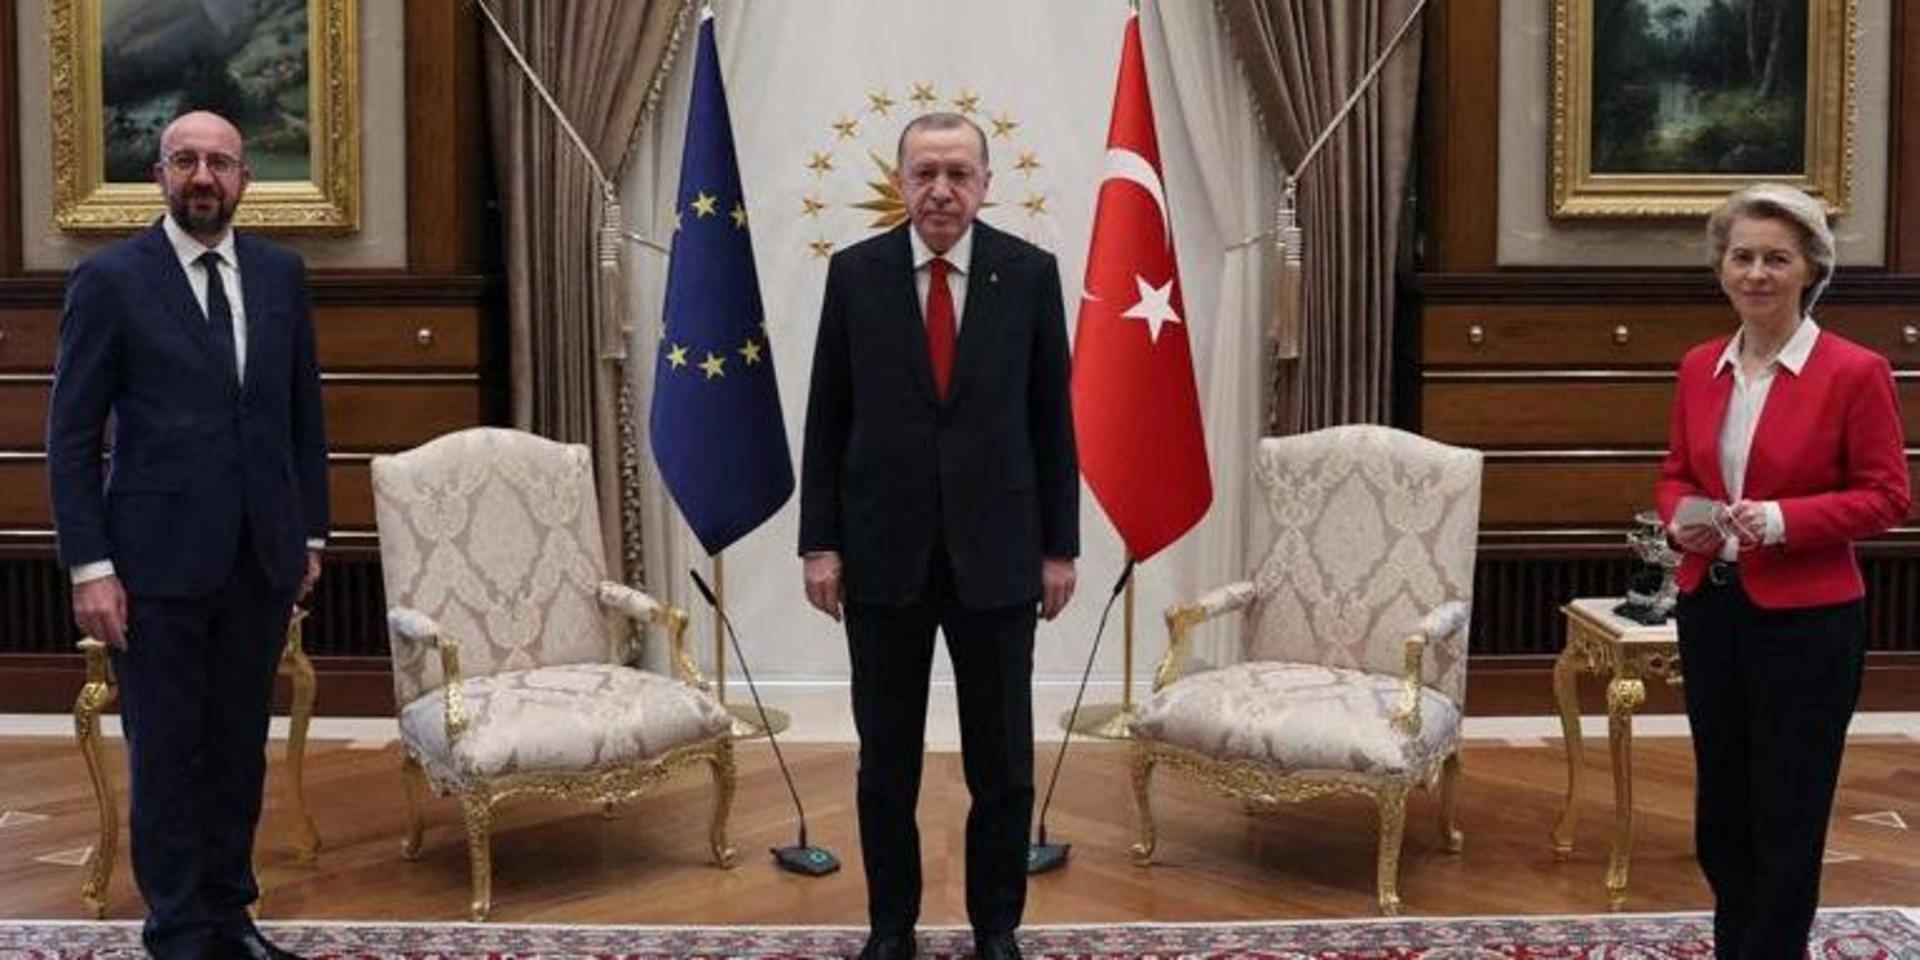 EU:s rådsordförande Charles Michel, Turkiets president Recep Tayyip Erdogan och EU-kommissionens ordförande Ursula von der Leyen vid tisdagens möte i Ankara.